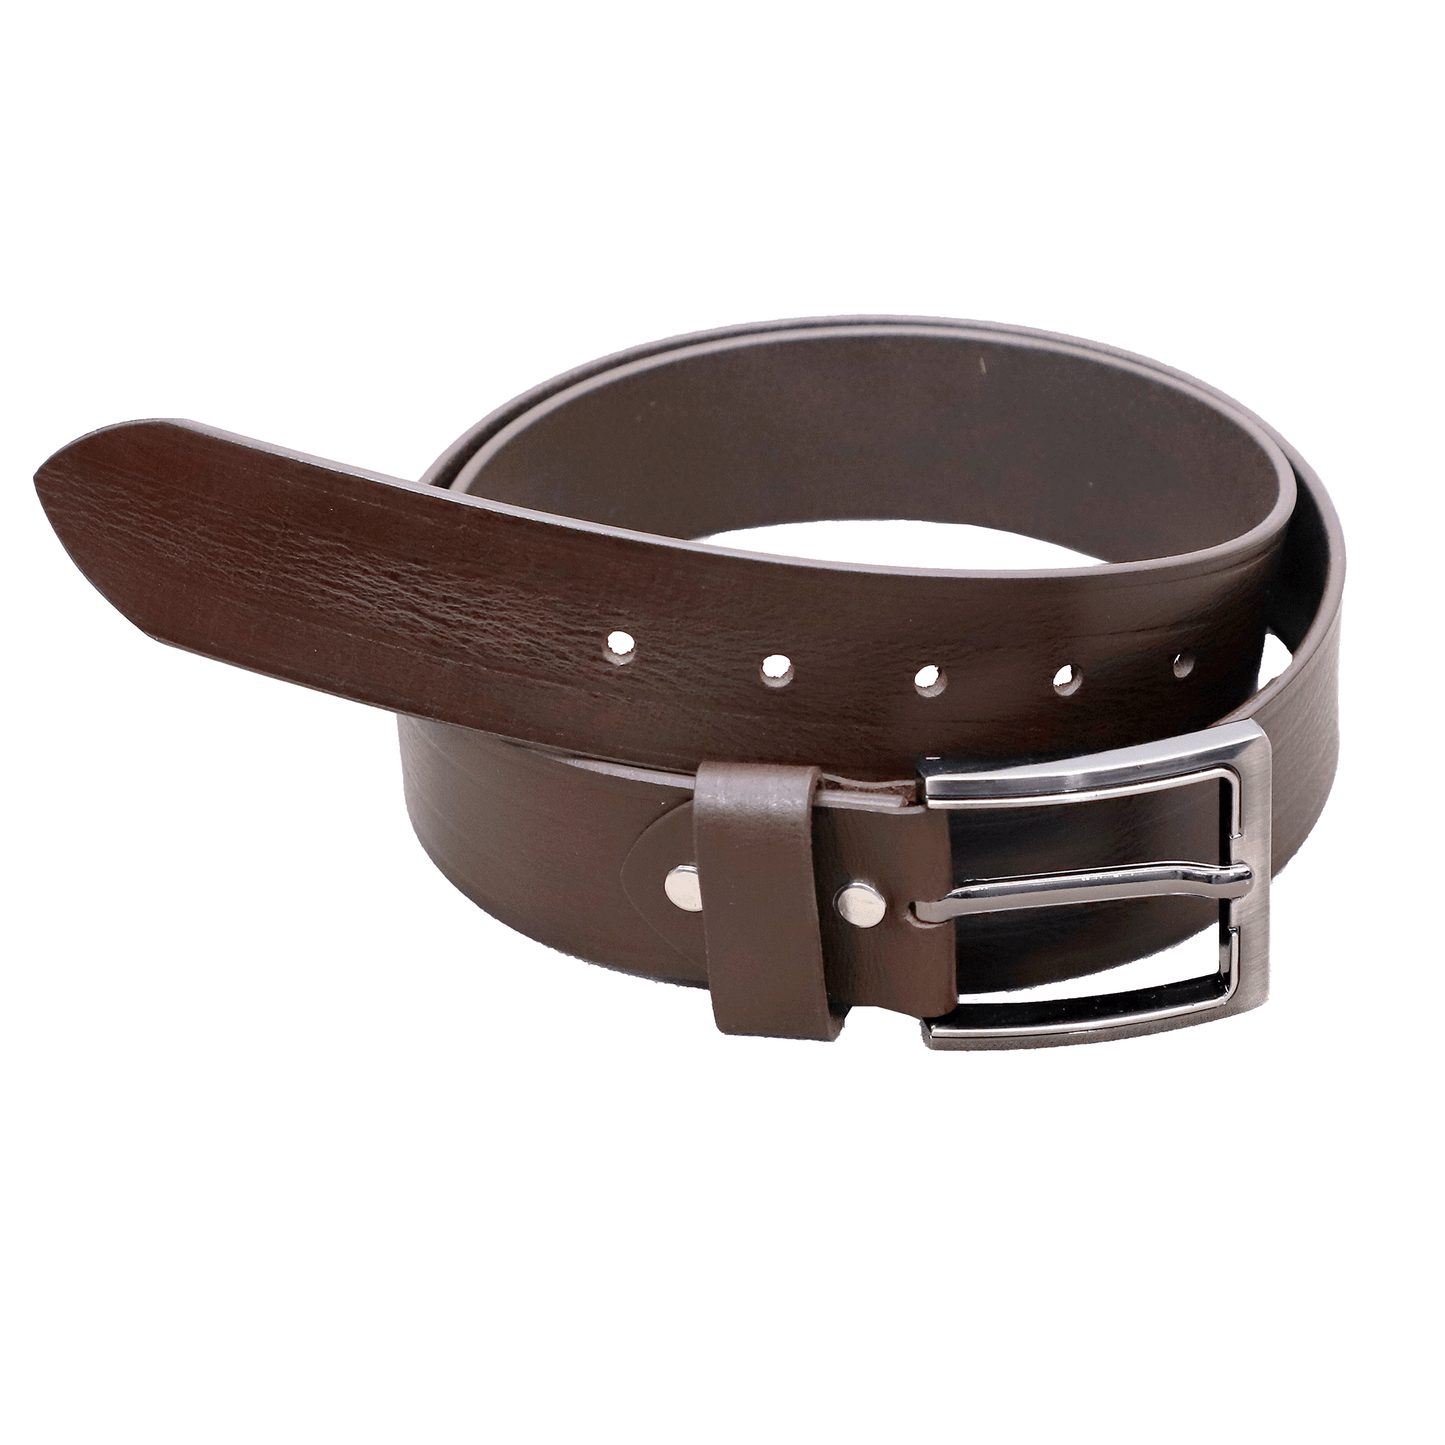 Mahogany Wood Leather Belt - Eloq